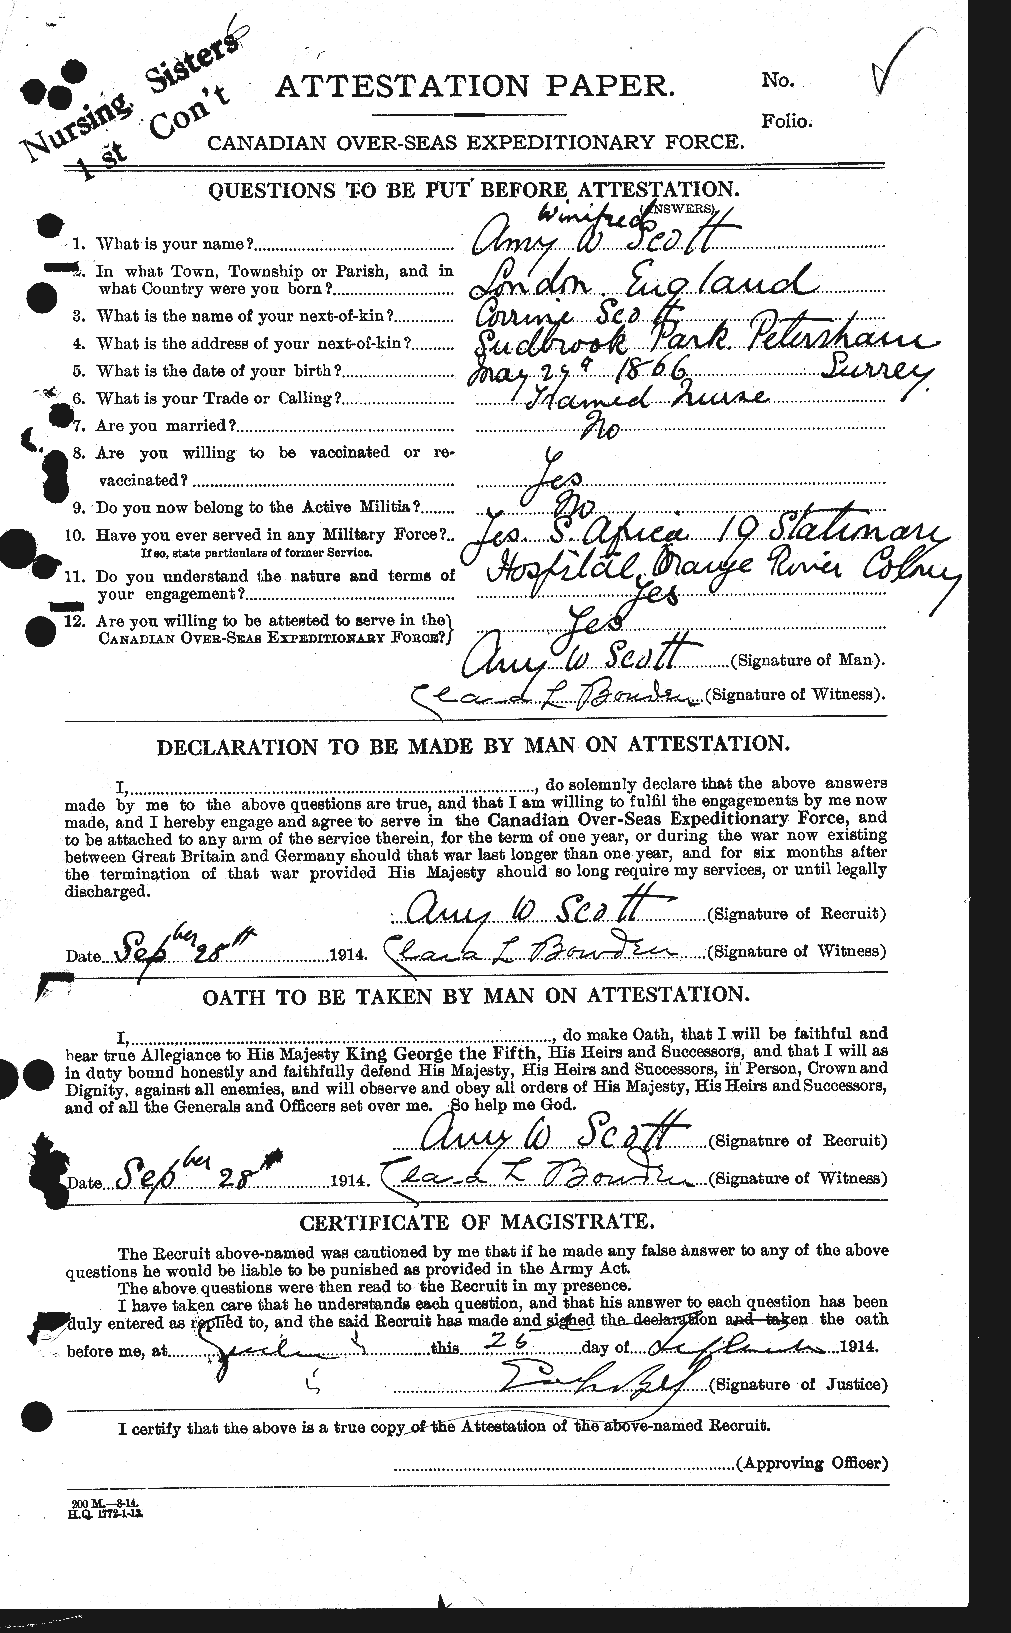 Dossiers du Personnel de la Première Guerre mondiale - CEC 086563a